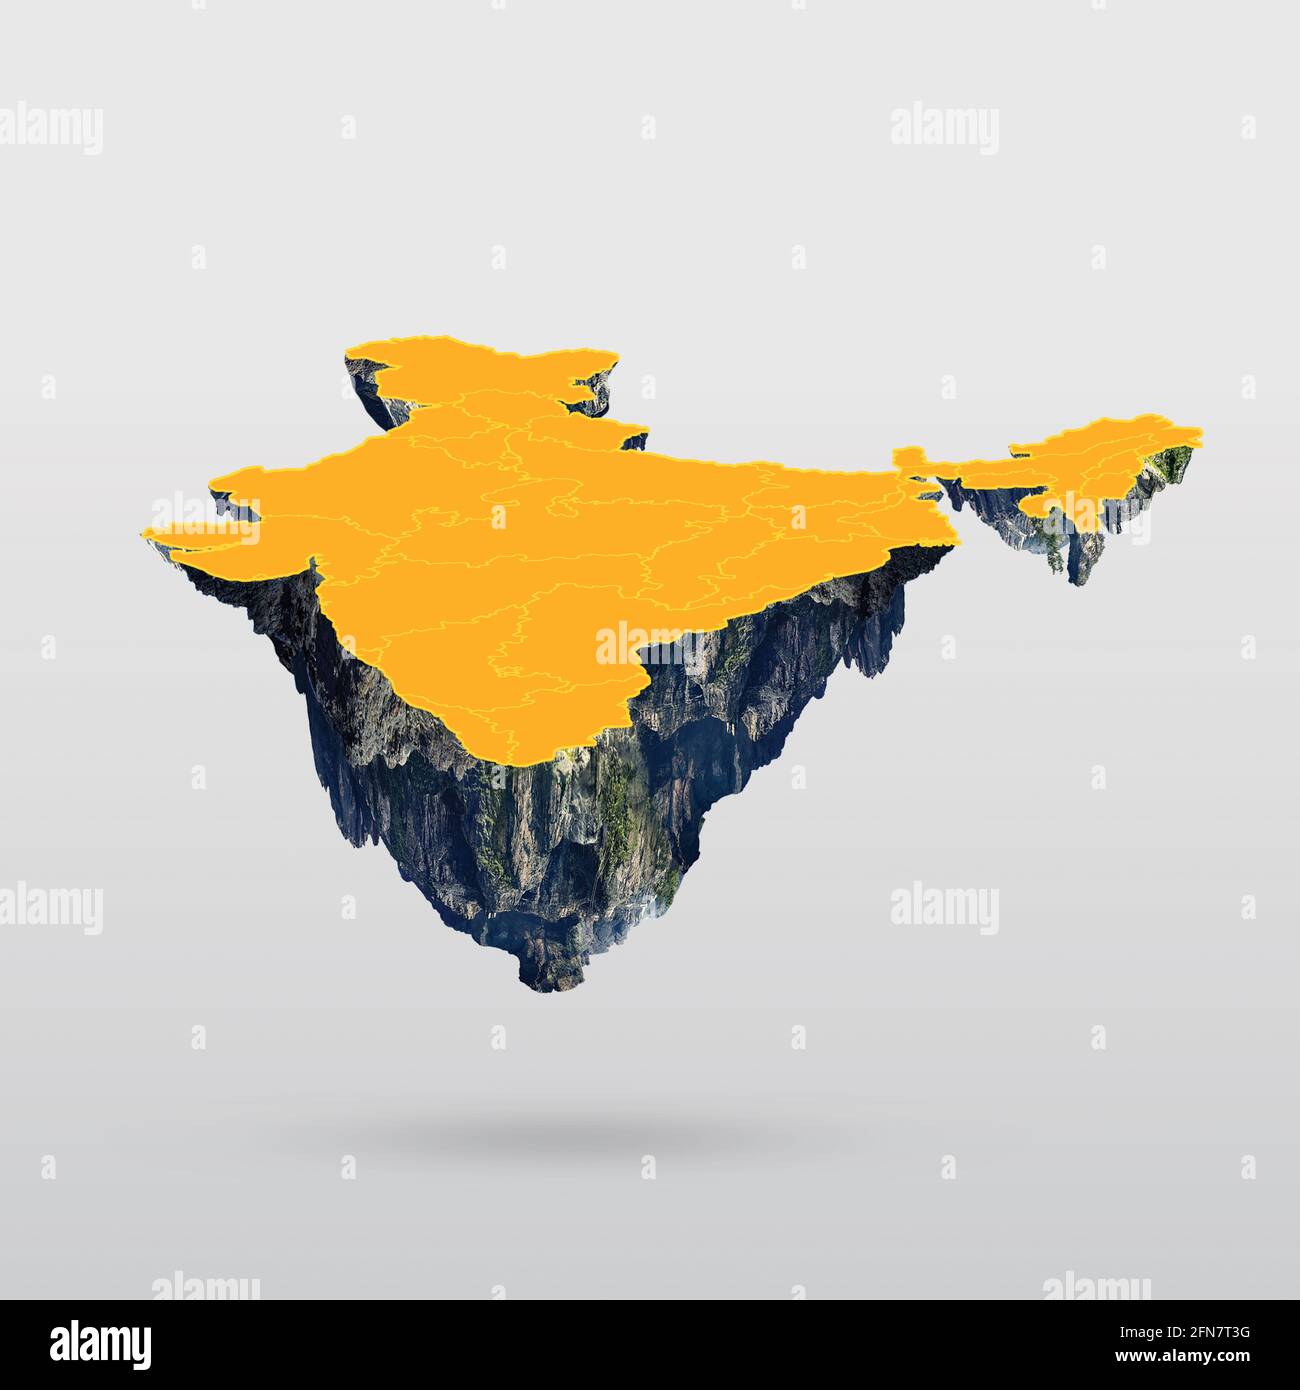 Isla flotante Ilustración del mapa de la India aislado en el fondo blanco Foto de stock